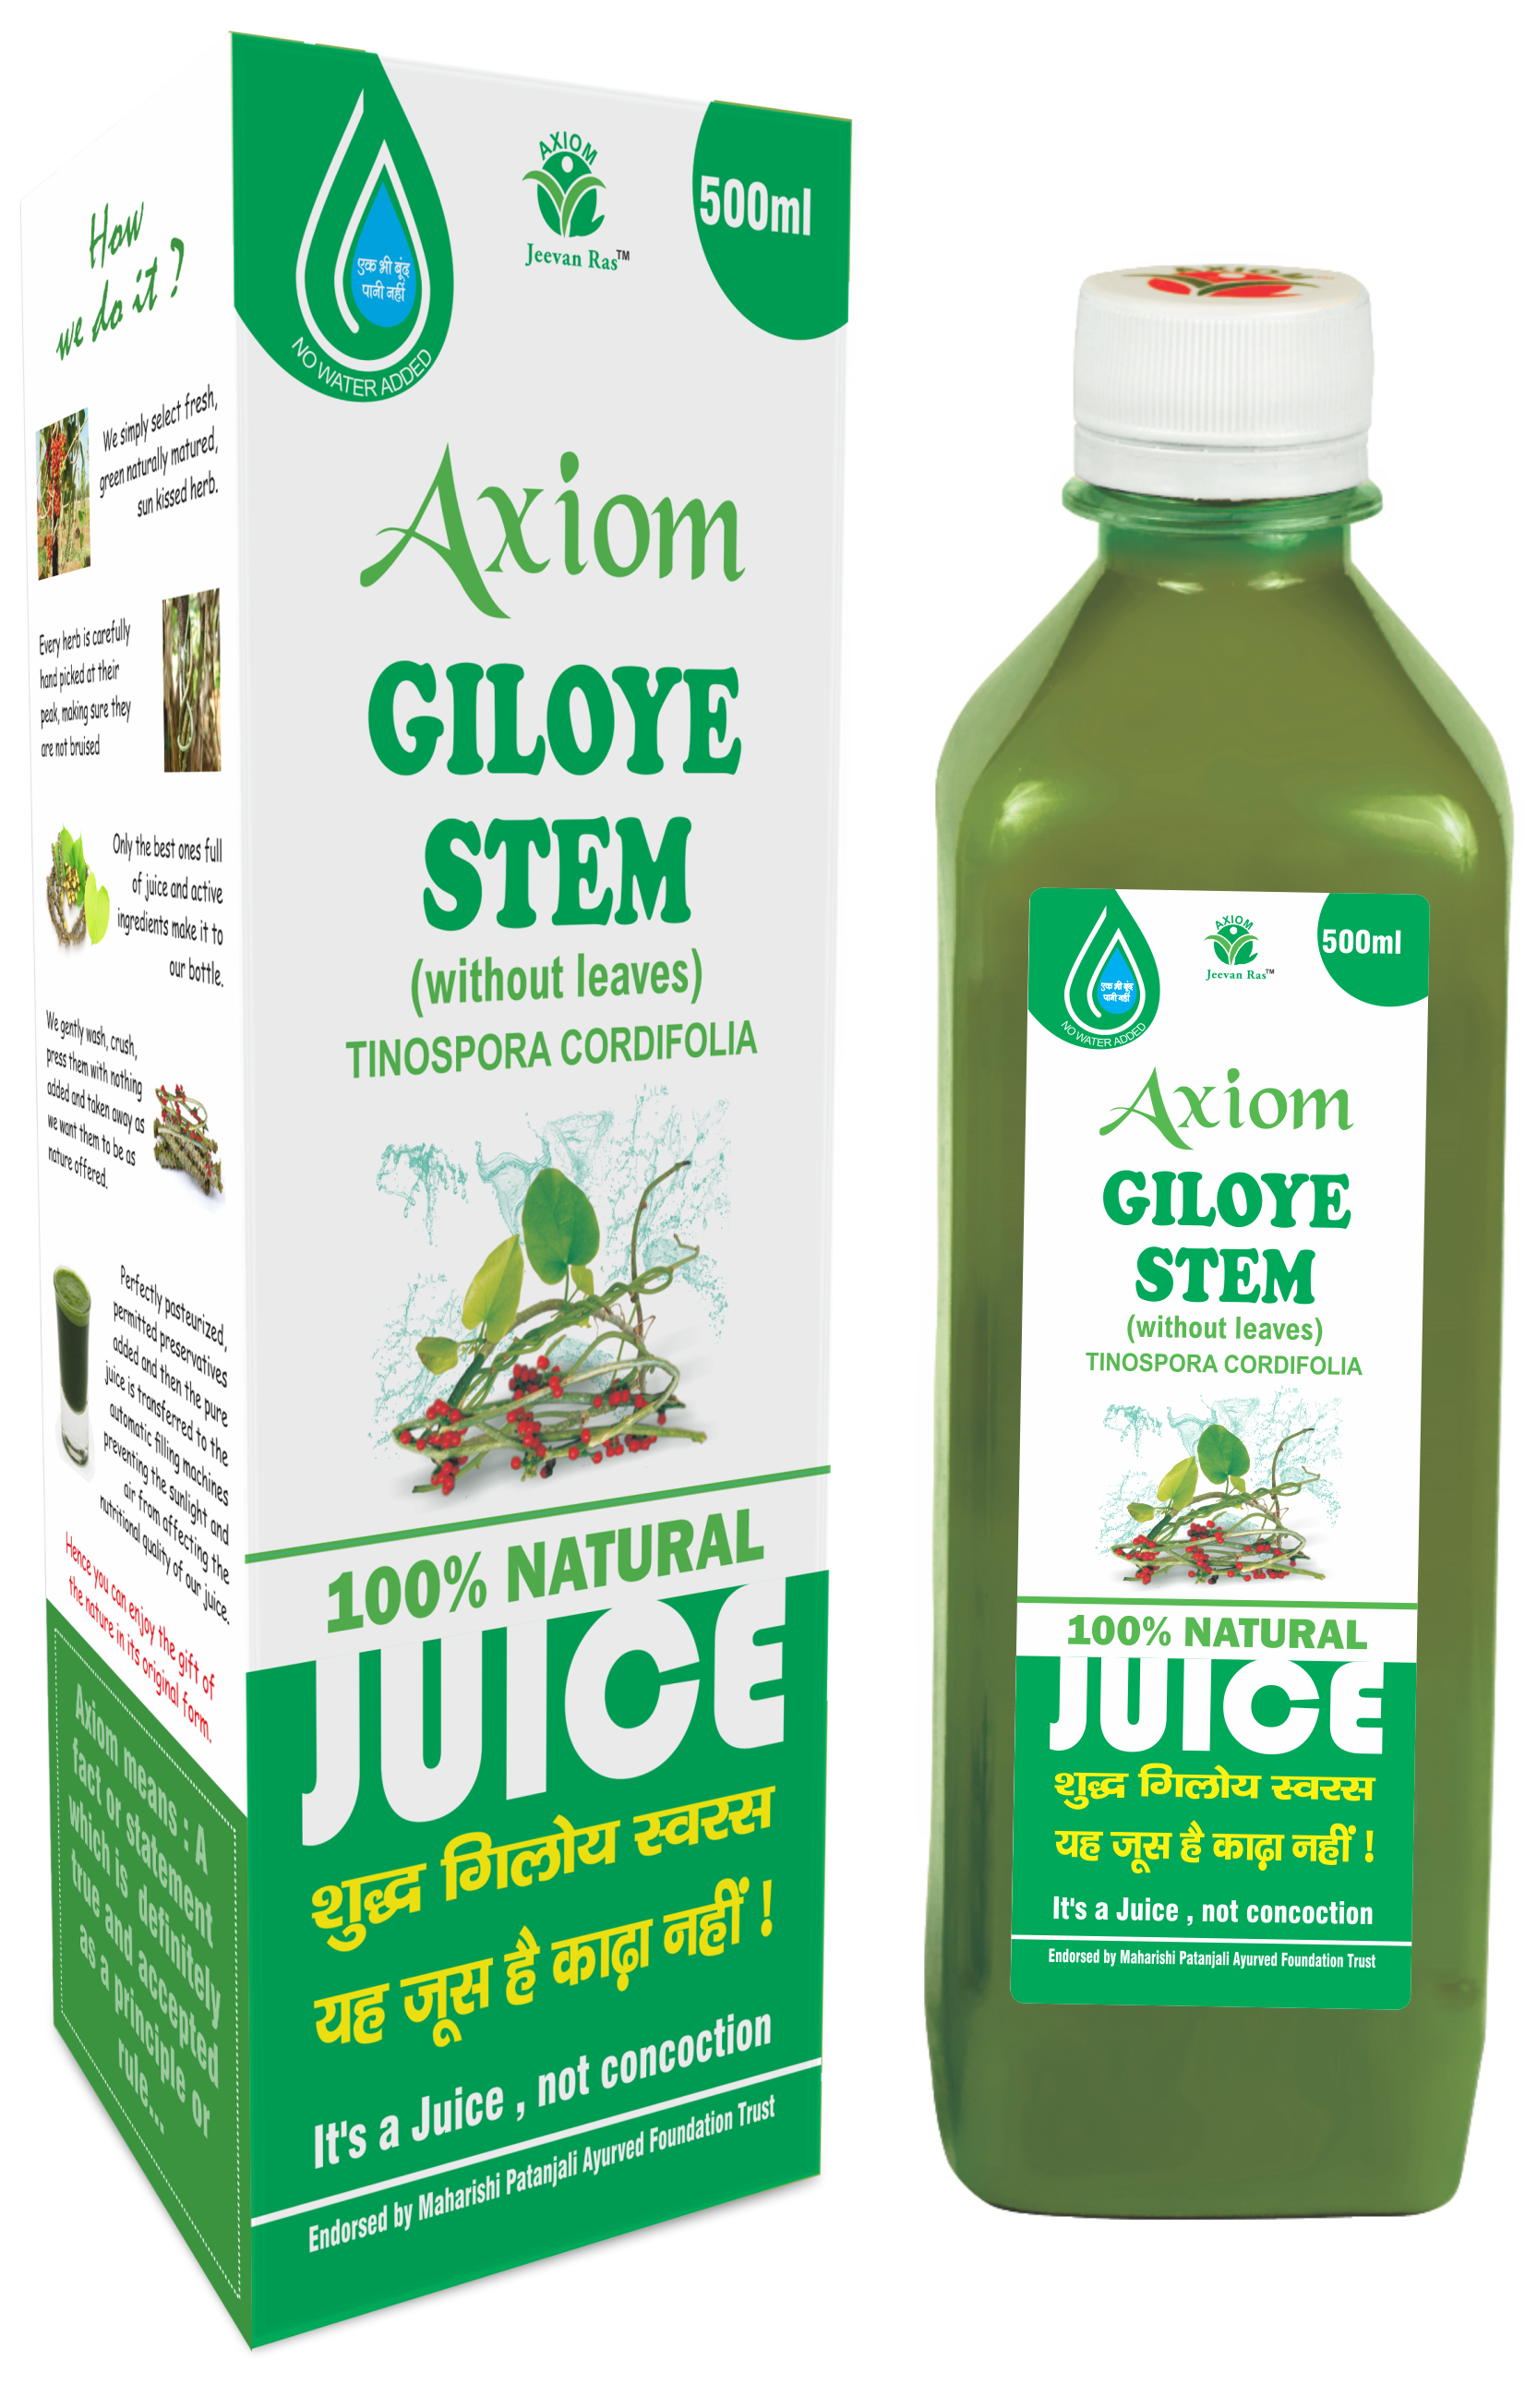 Axiom Giloye Juice